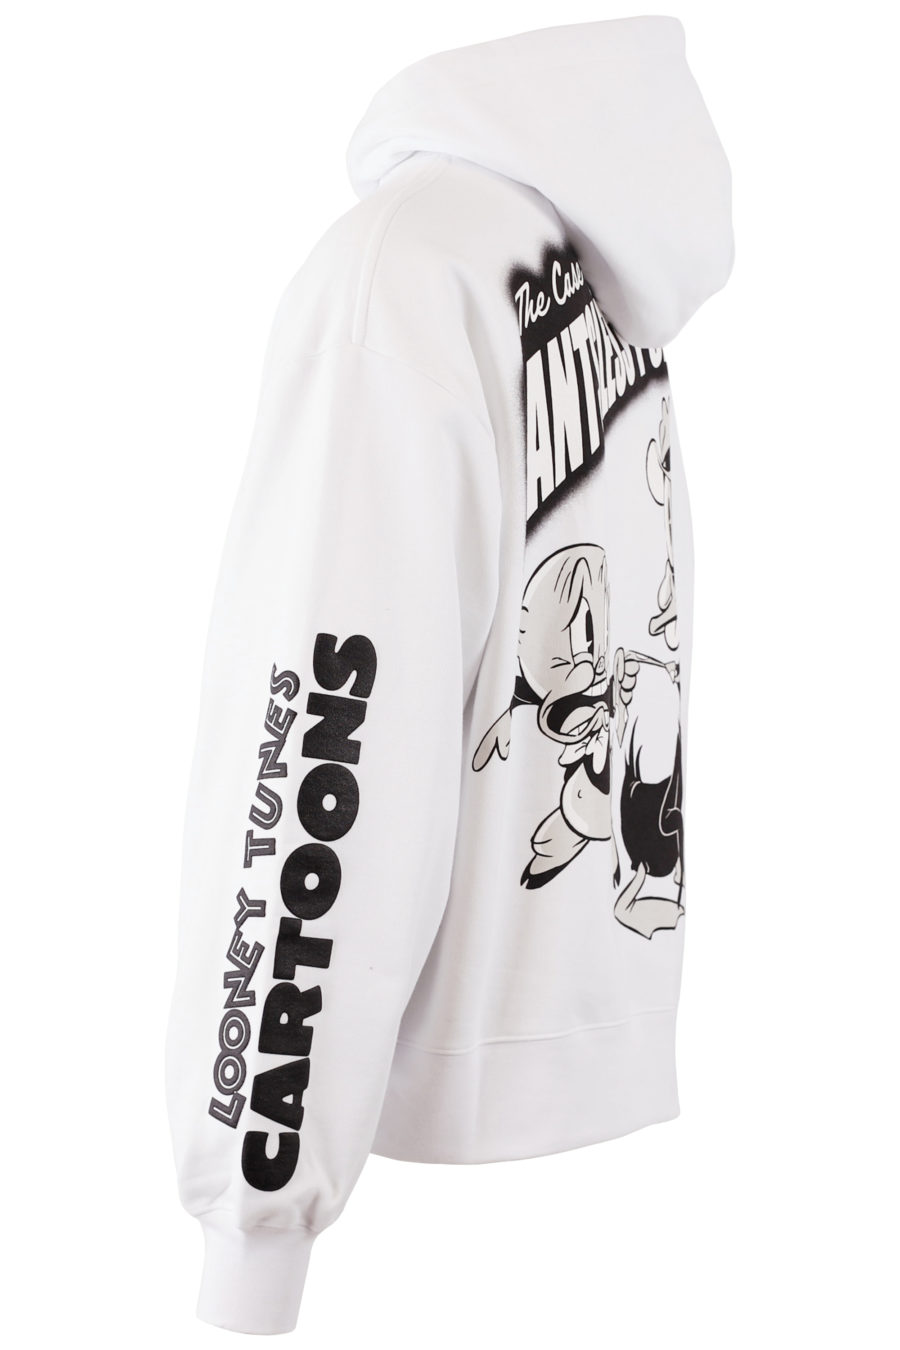 Camisola com capuz branca com estampado gráfico Looney Tunes - cópia IMG 7680